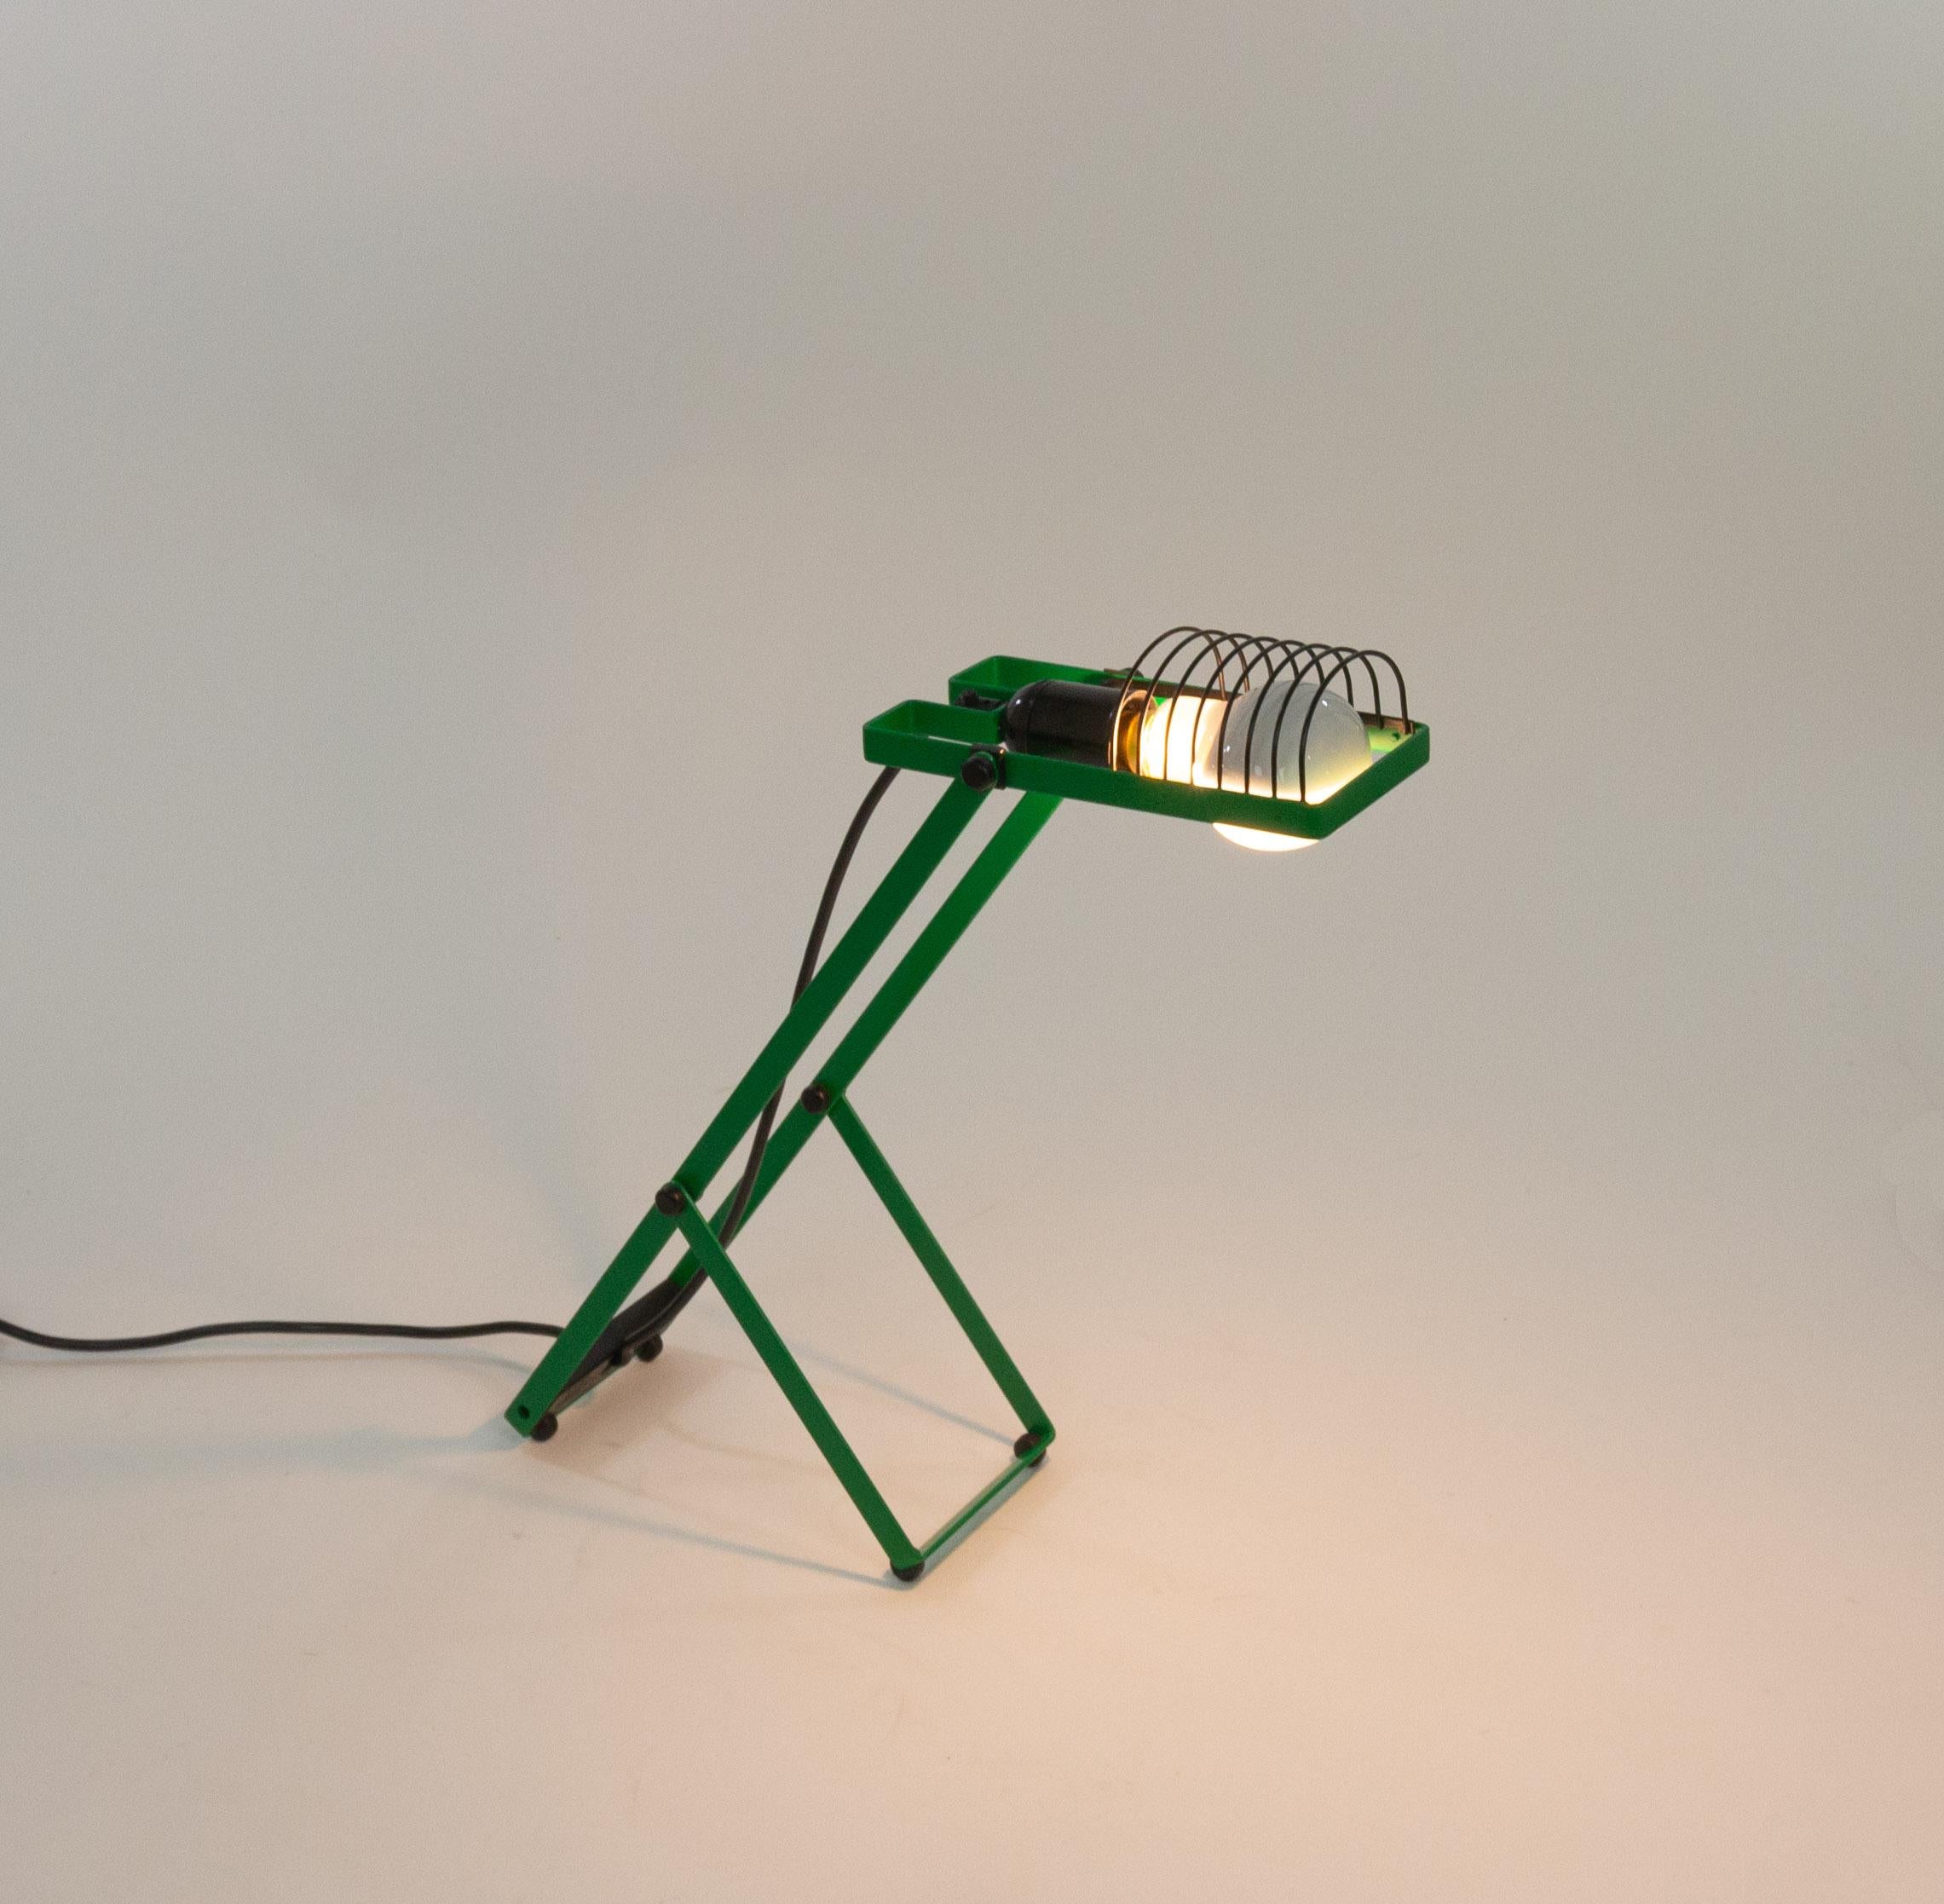 Tischleuchte Sintesi, entworfen von Ernesto Gismondi für das italienische Beleuchtungsunternehmen Artemide in den 1970er Jahren.

Diese Lampe stammt aus der ersten Serie der Sintesi-Lampe. Die Leuchte ist für eine Bajonettfassung geeignet und wird